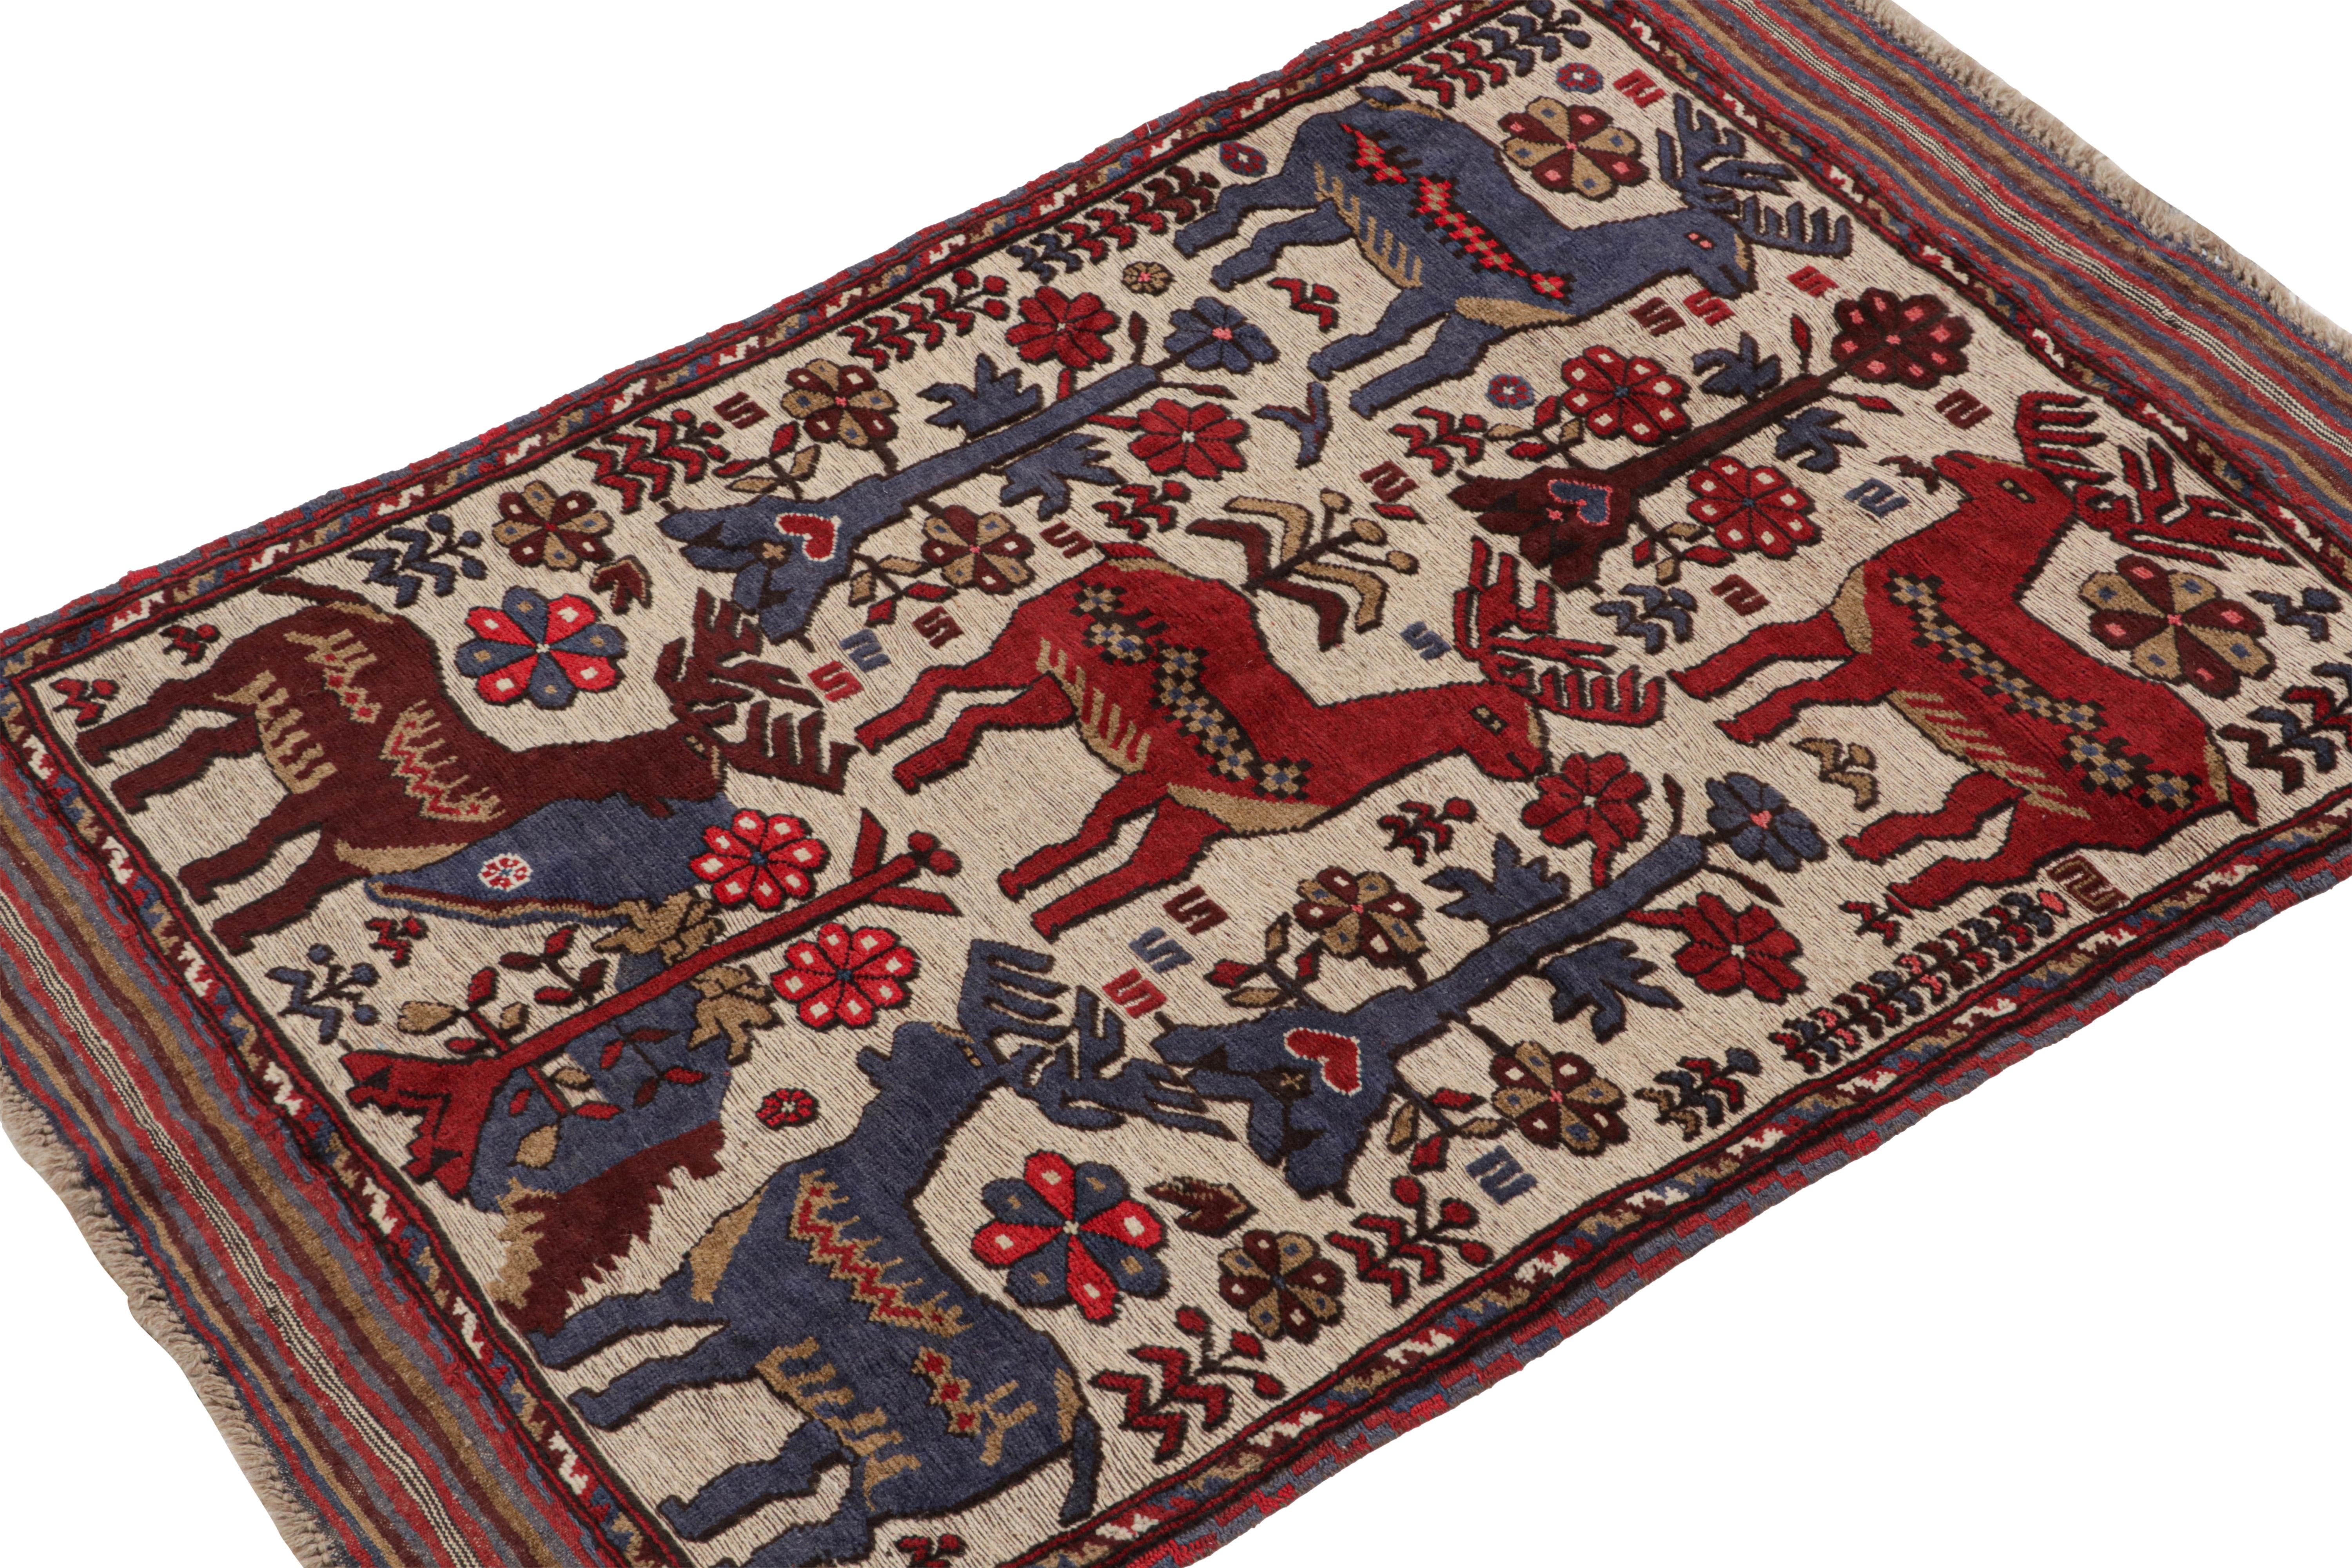 Inspiriert von den persischen Barjasta-Teppichen ist dieses 4x5 Stück das neueste Mitglied der Modern Classics Kollektion von Rug & Kilim.

Über das Design: 

Der Teppich greift die Stammesästhetik dieser Linie mit einer Montage von exzentrischen